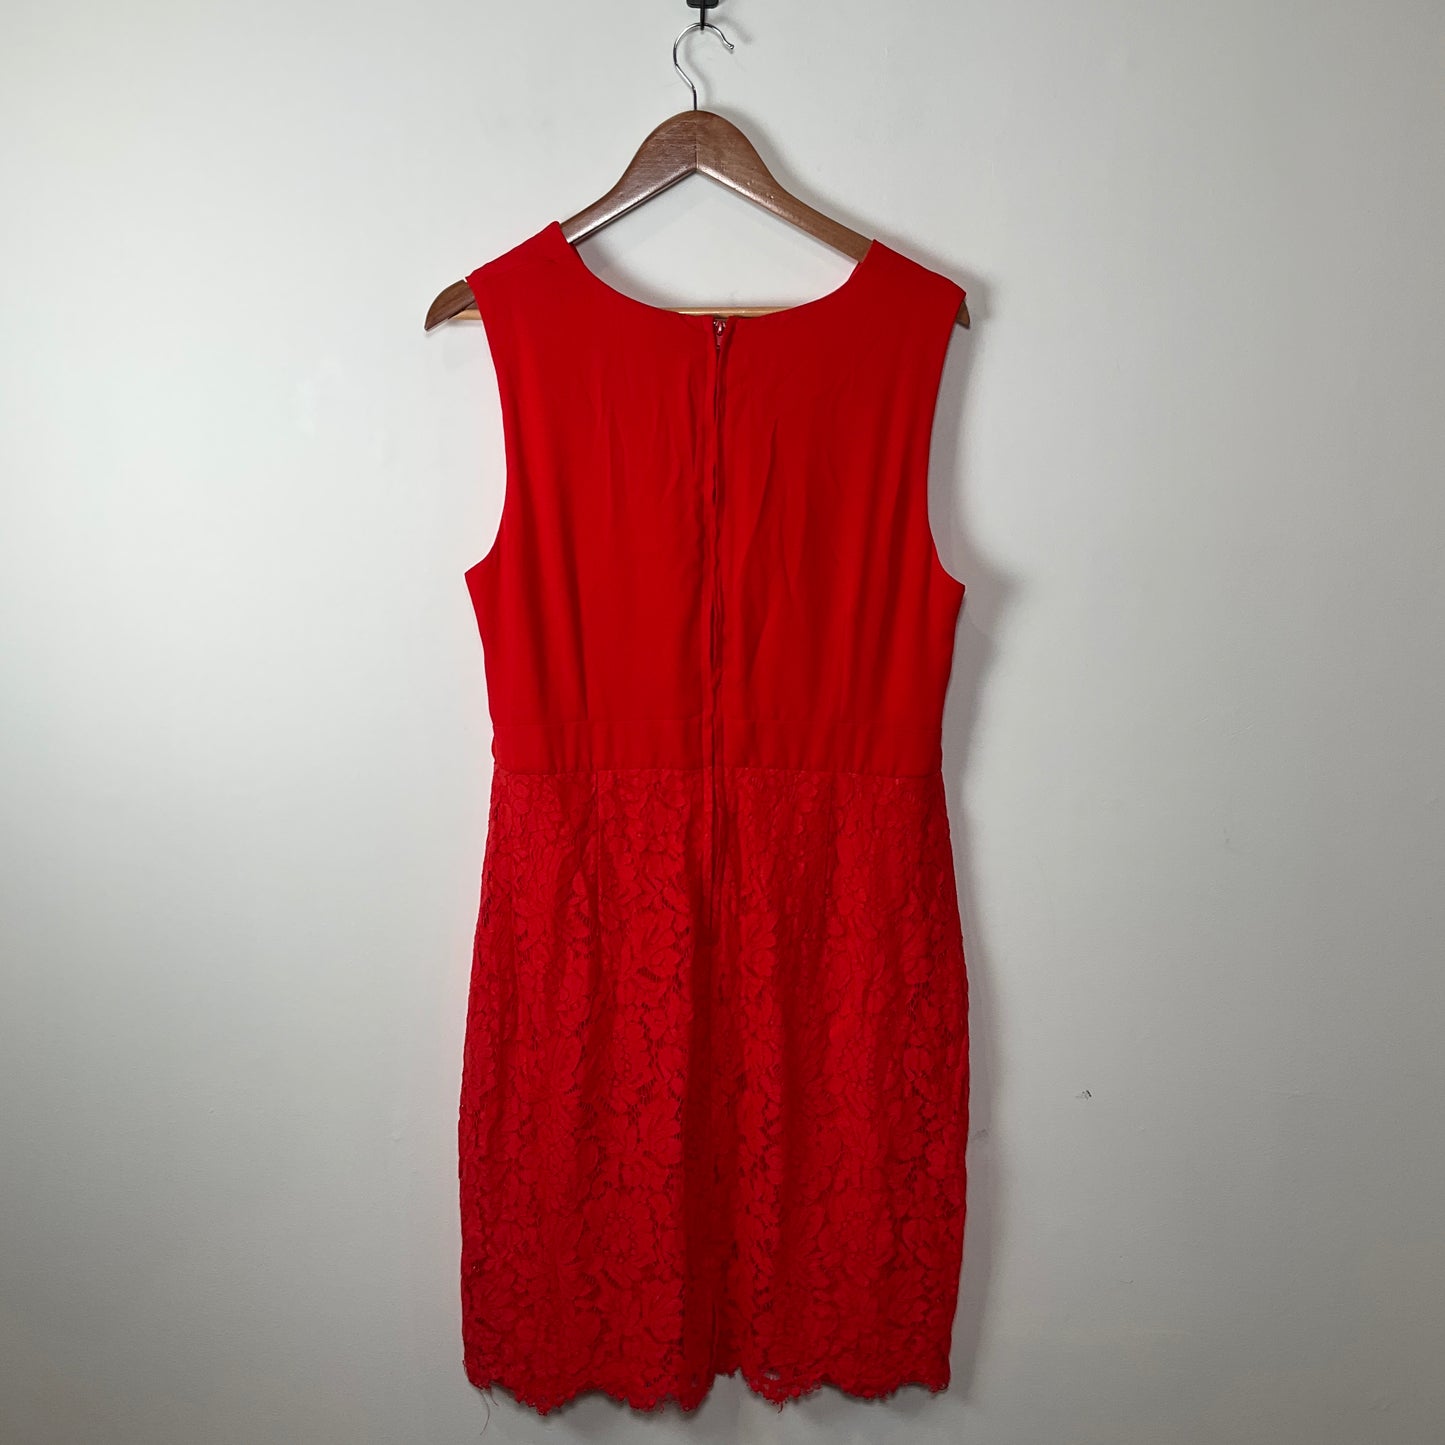 Pagani - Red Dress